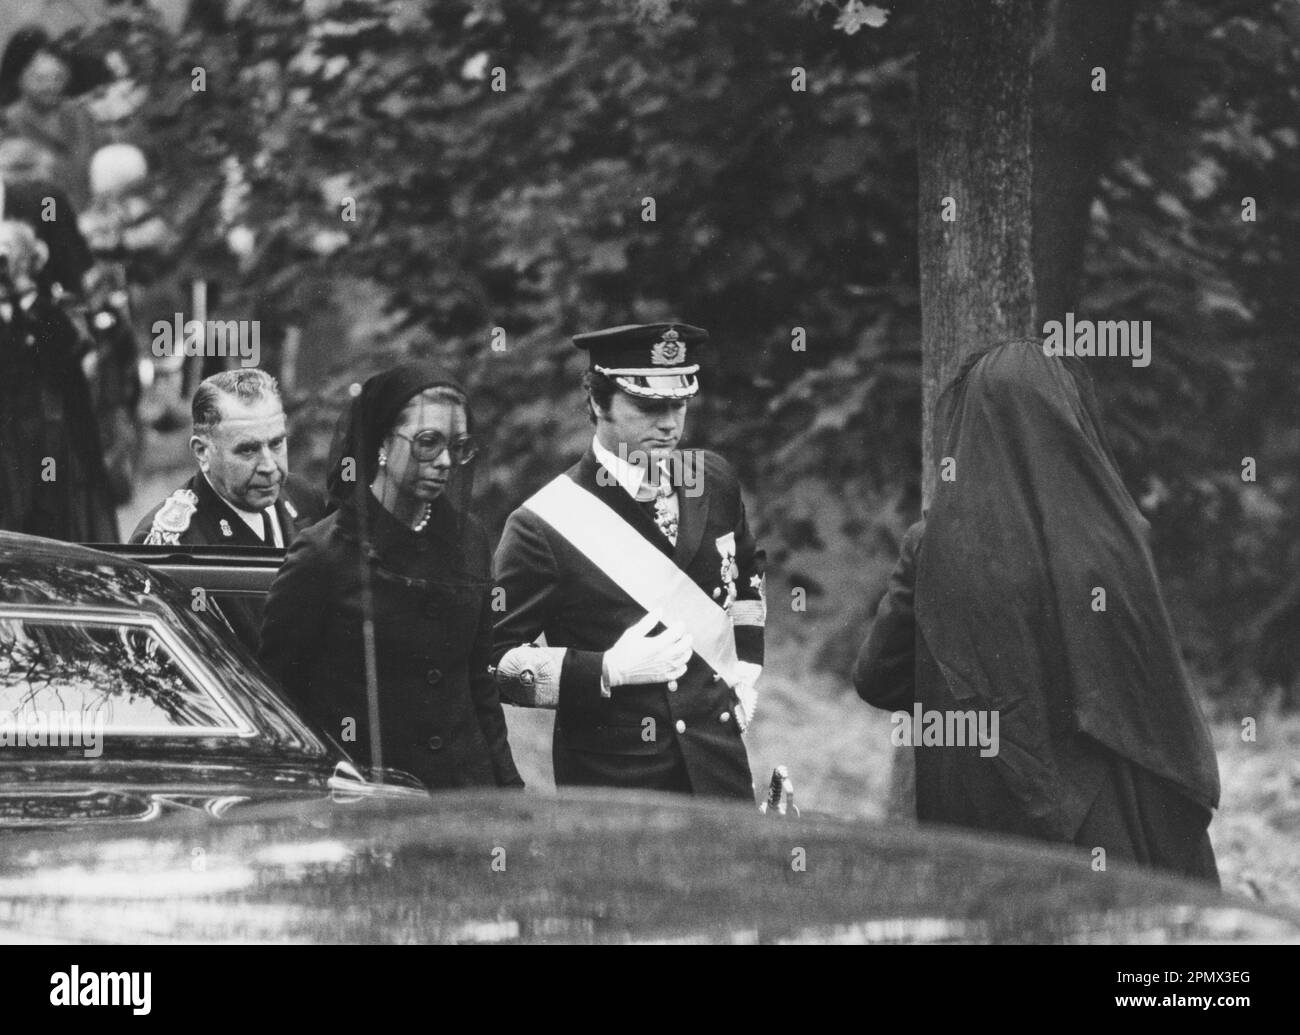 Carl XVI Gustaf, König von Schweden. Geboren am 30. april 1946. Am 25. september 1973 bei der Beerdigung seines Großvaters König Gustaf VI. Adolf. Bei der Beerdigung war auch Königin Ingrid von Dänemark, Prinzessin Christina von Schweden. Foto im königlichen Park Haga. Stockfoto